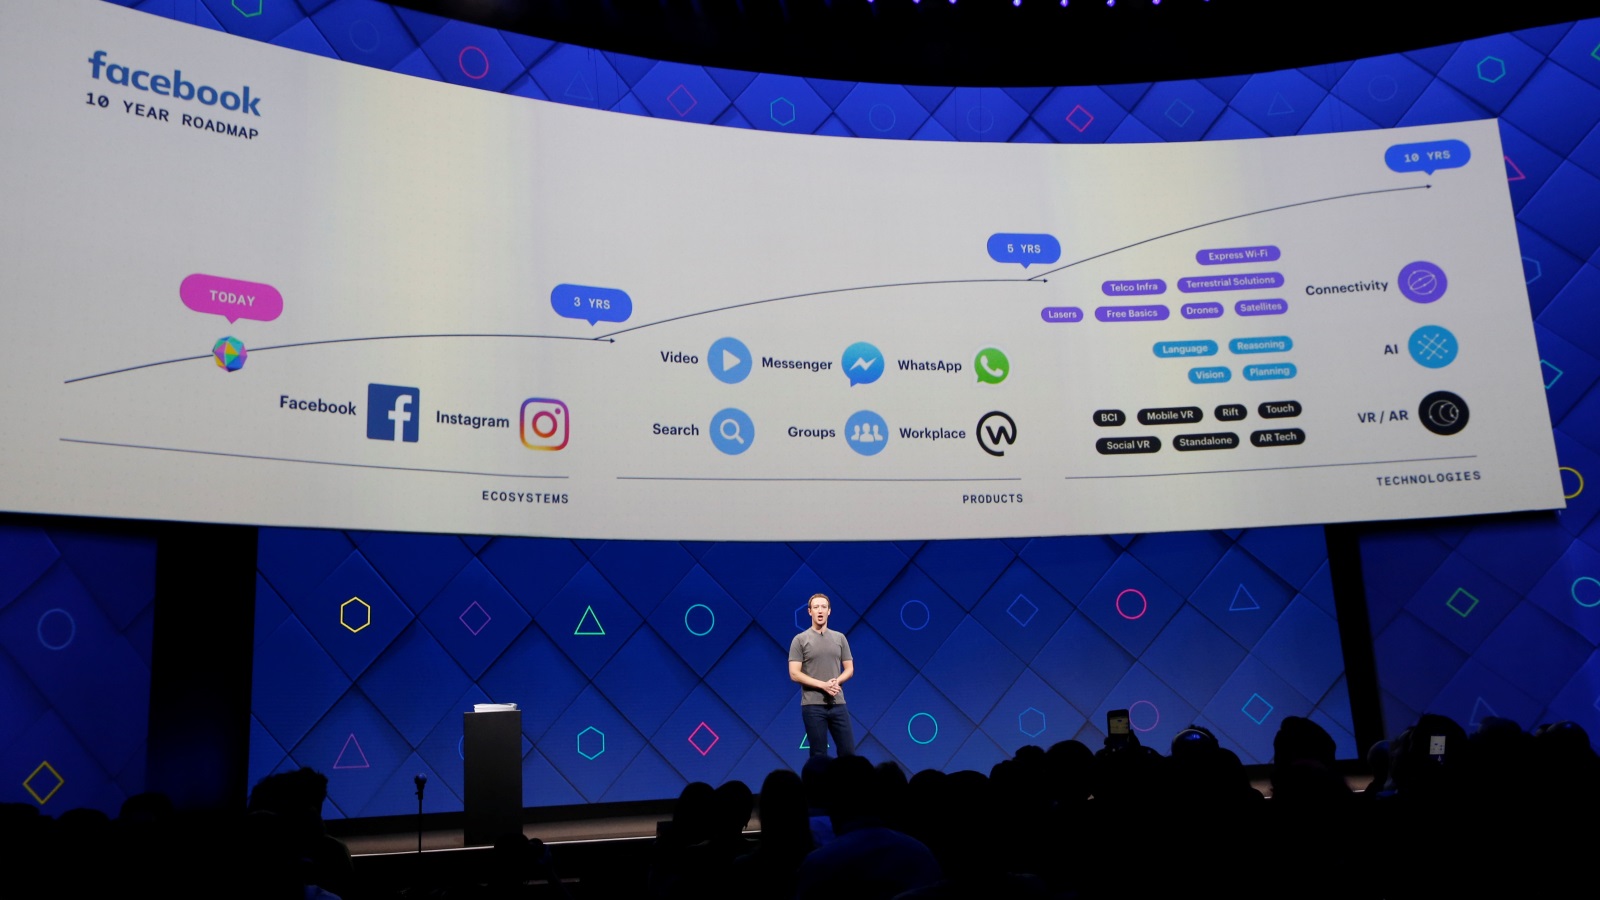 المدير التنفيذي ومنشئ فيسبوك مارك زوكربيرغ، يتحدث عن خطة فيسبوك للعشر سنوات القادمة (رويترز)